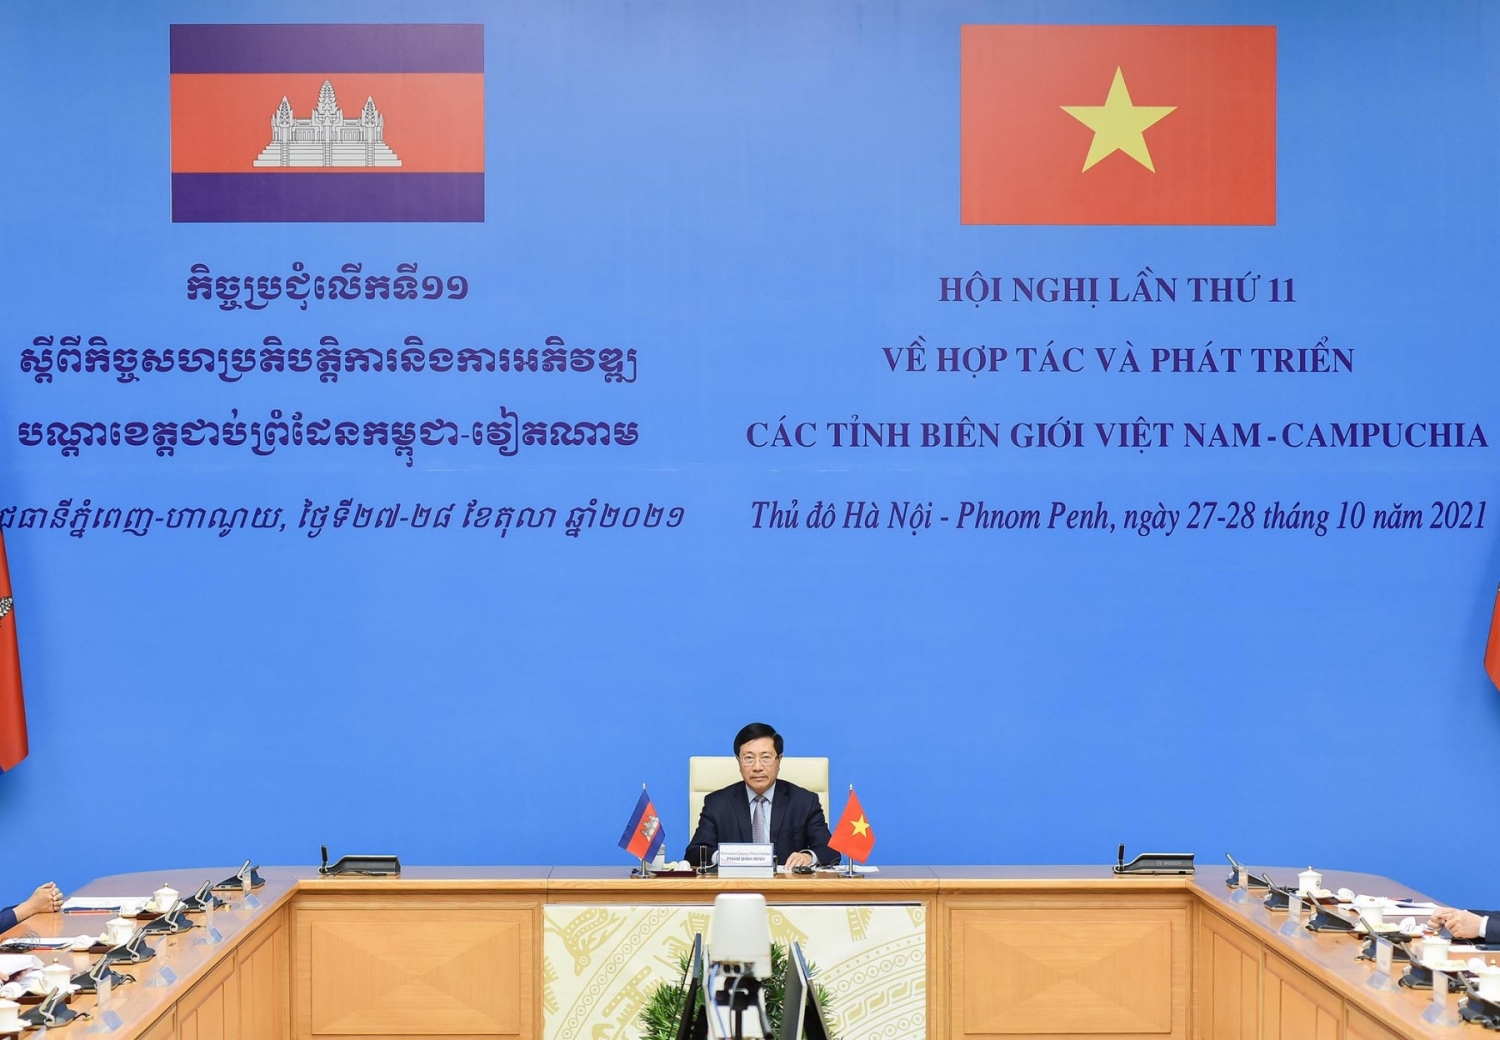 Hội nghị Hợp tác và Phát triển các tỉnh biên giới Việt Nam - Campuchia lần thứ 11